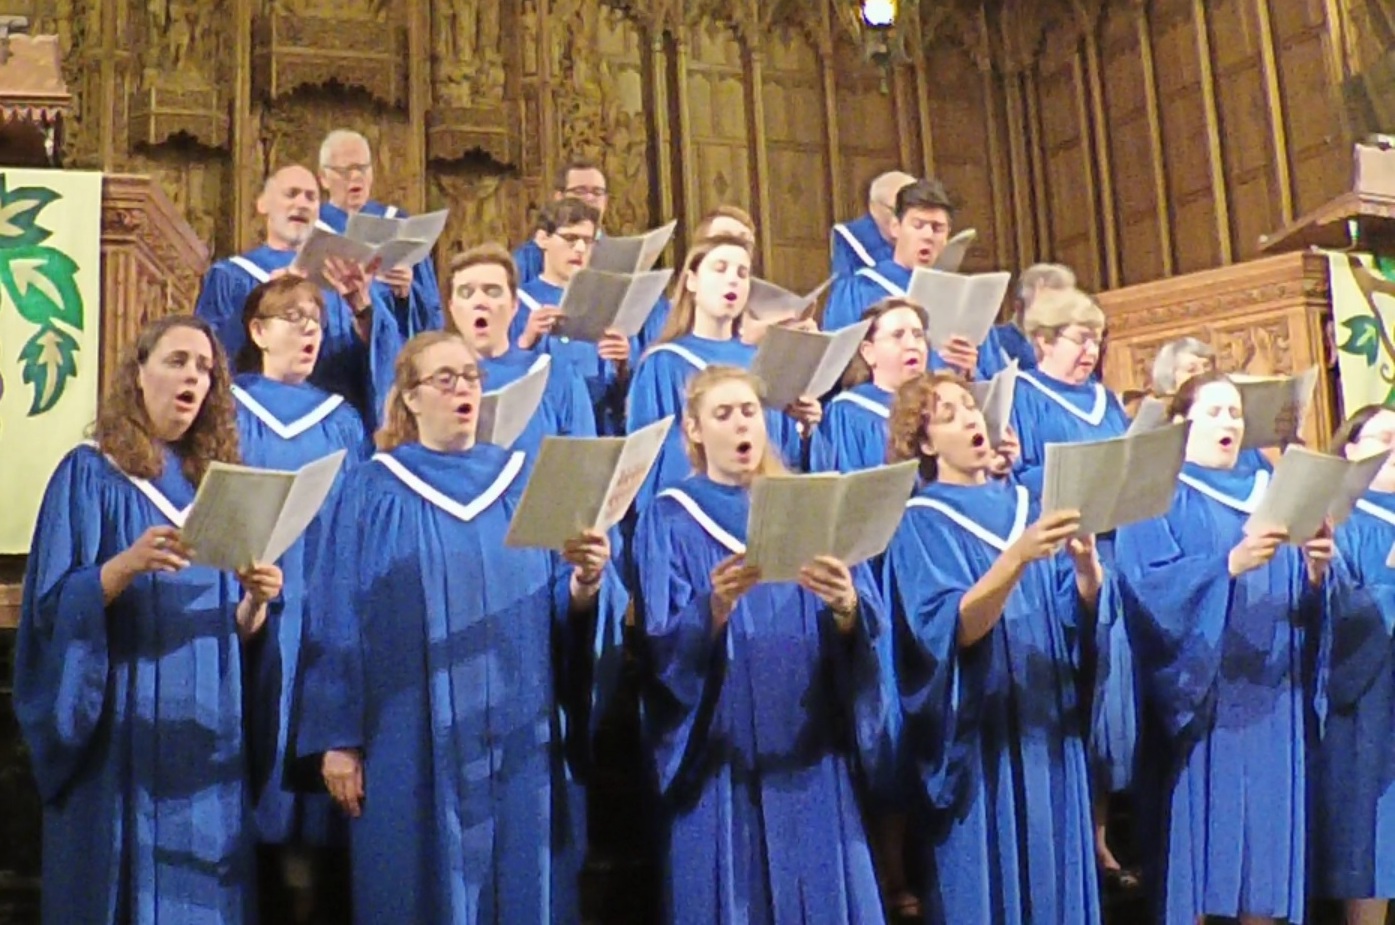 Choir members in blue robes lead worship